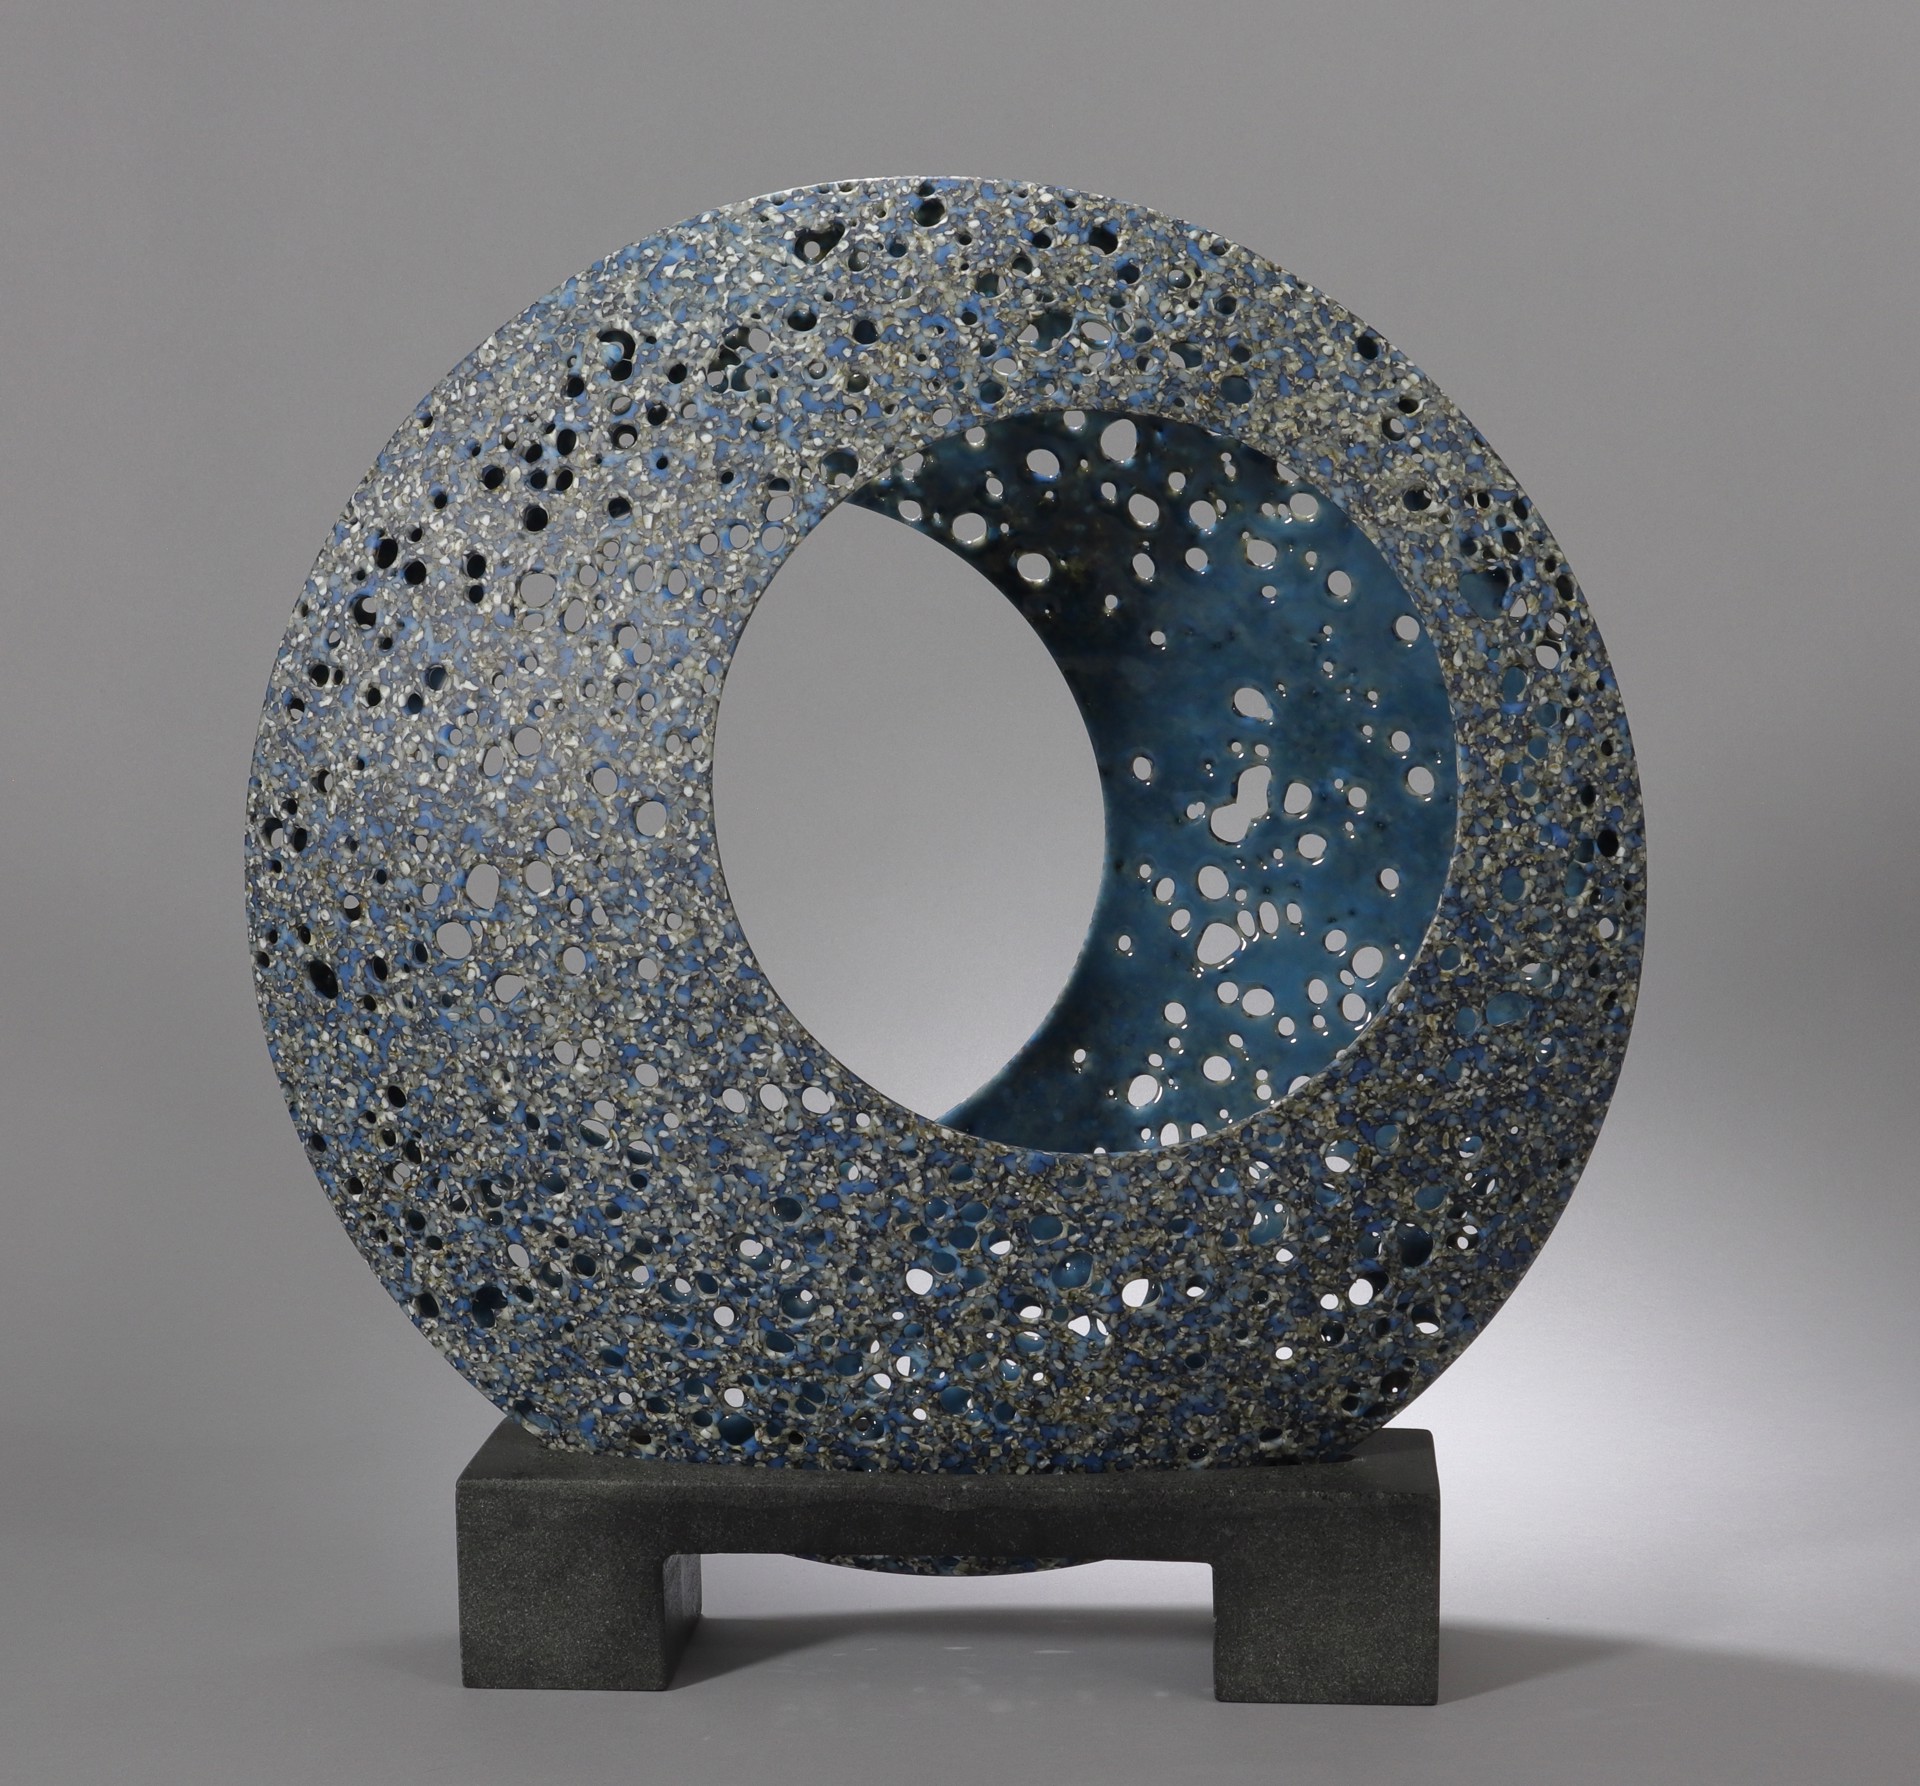 Enigma Granite by Karen Bexfield